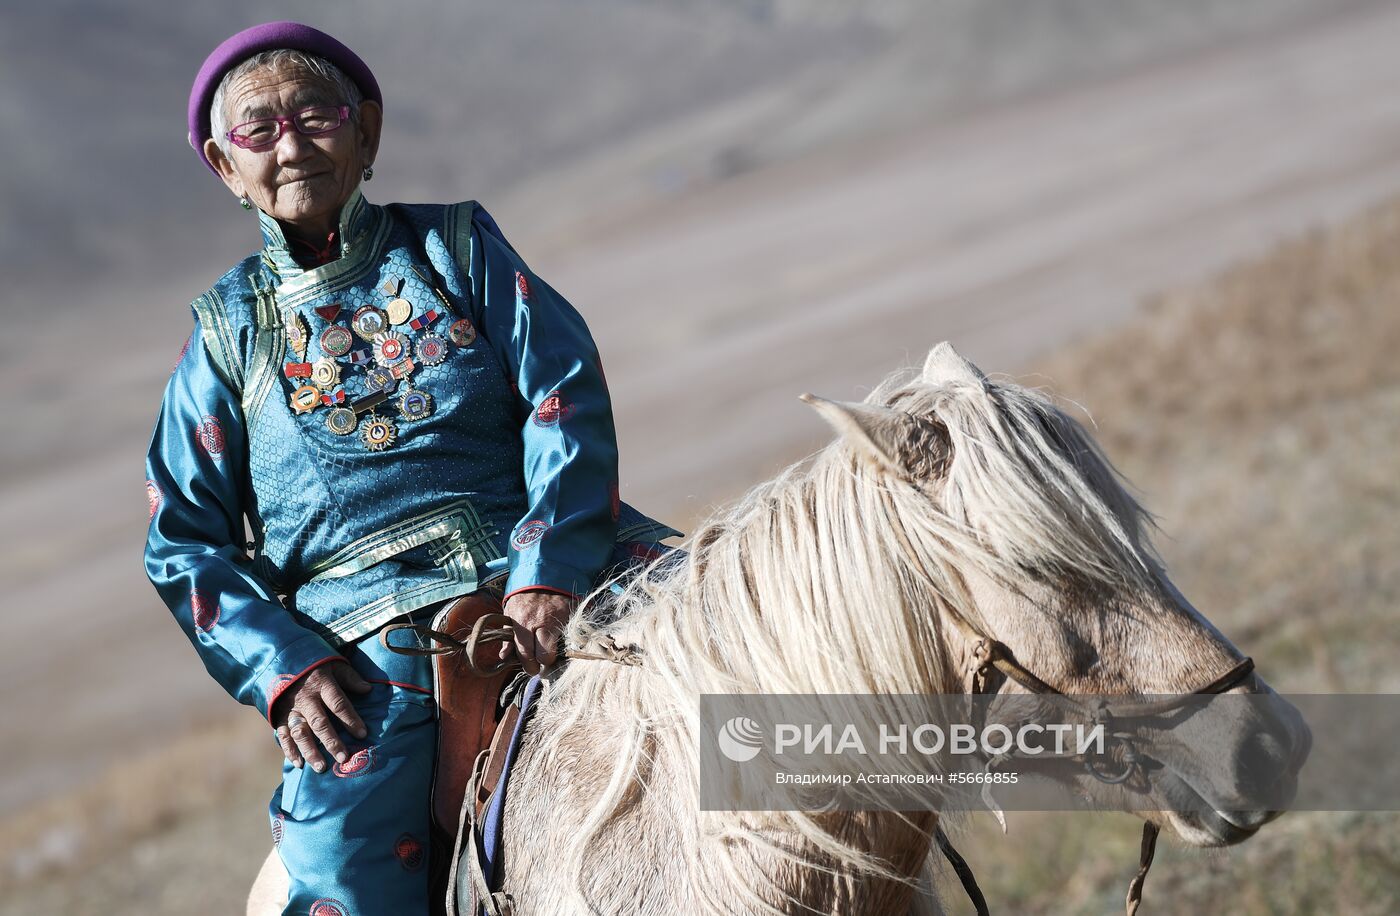 Страны мира. Монголия